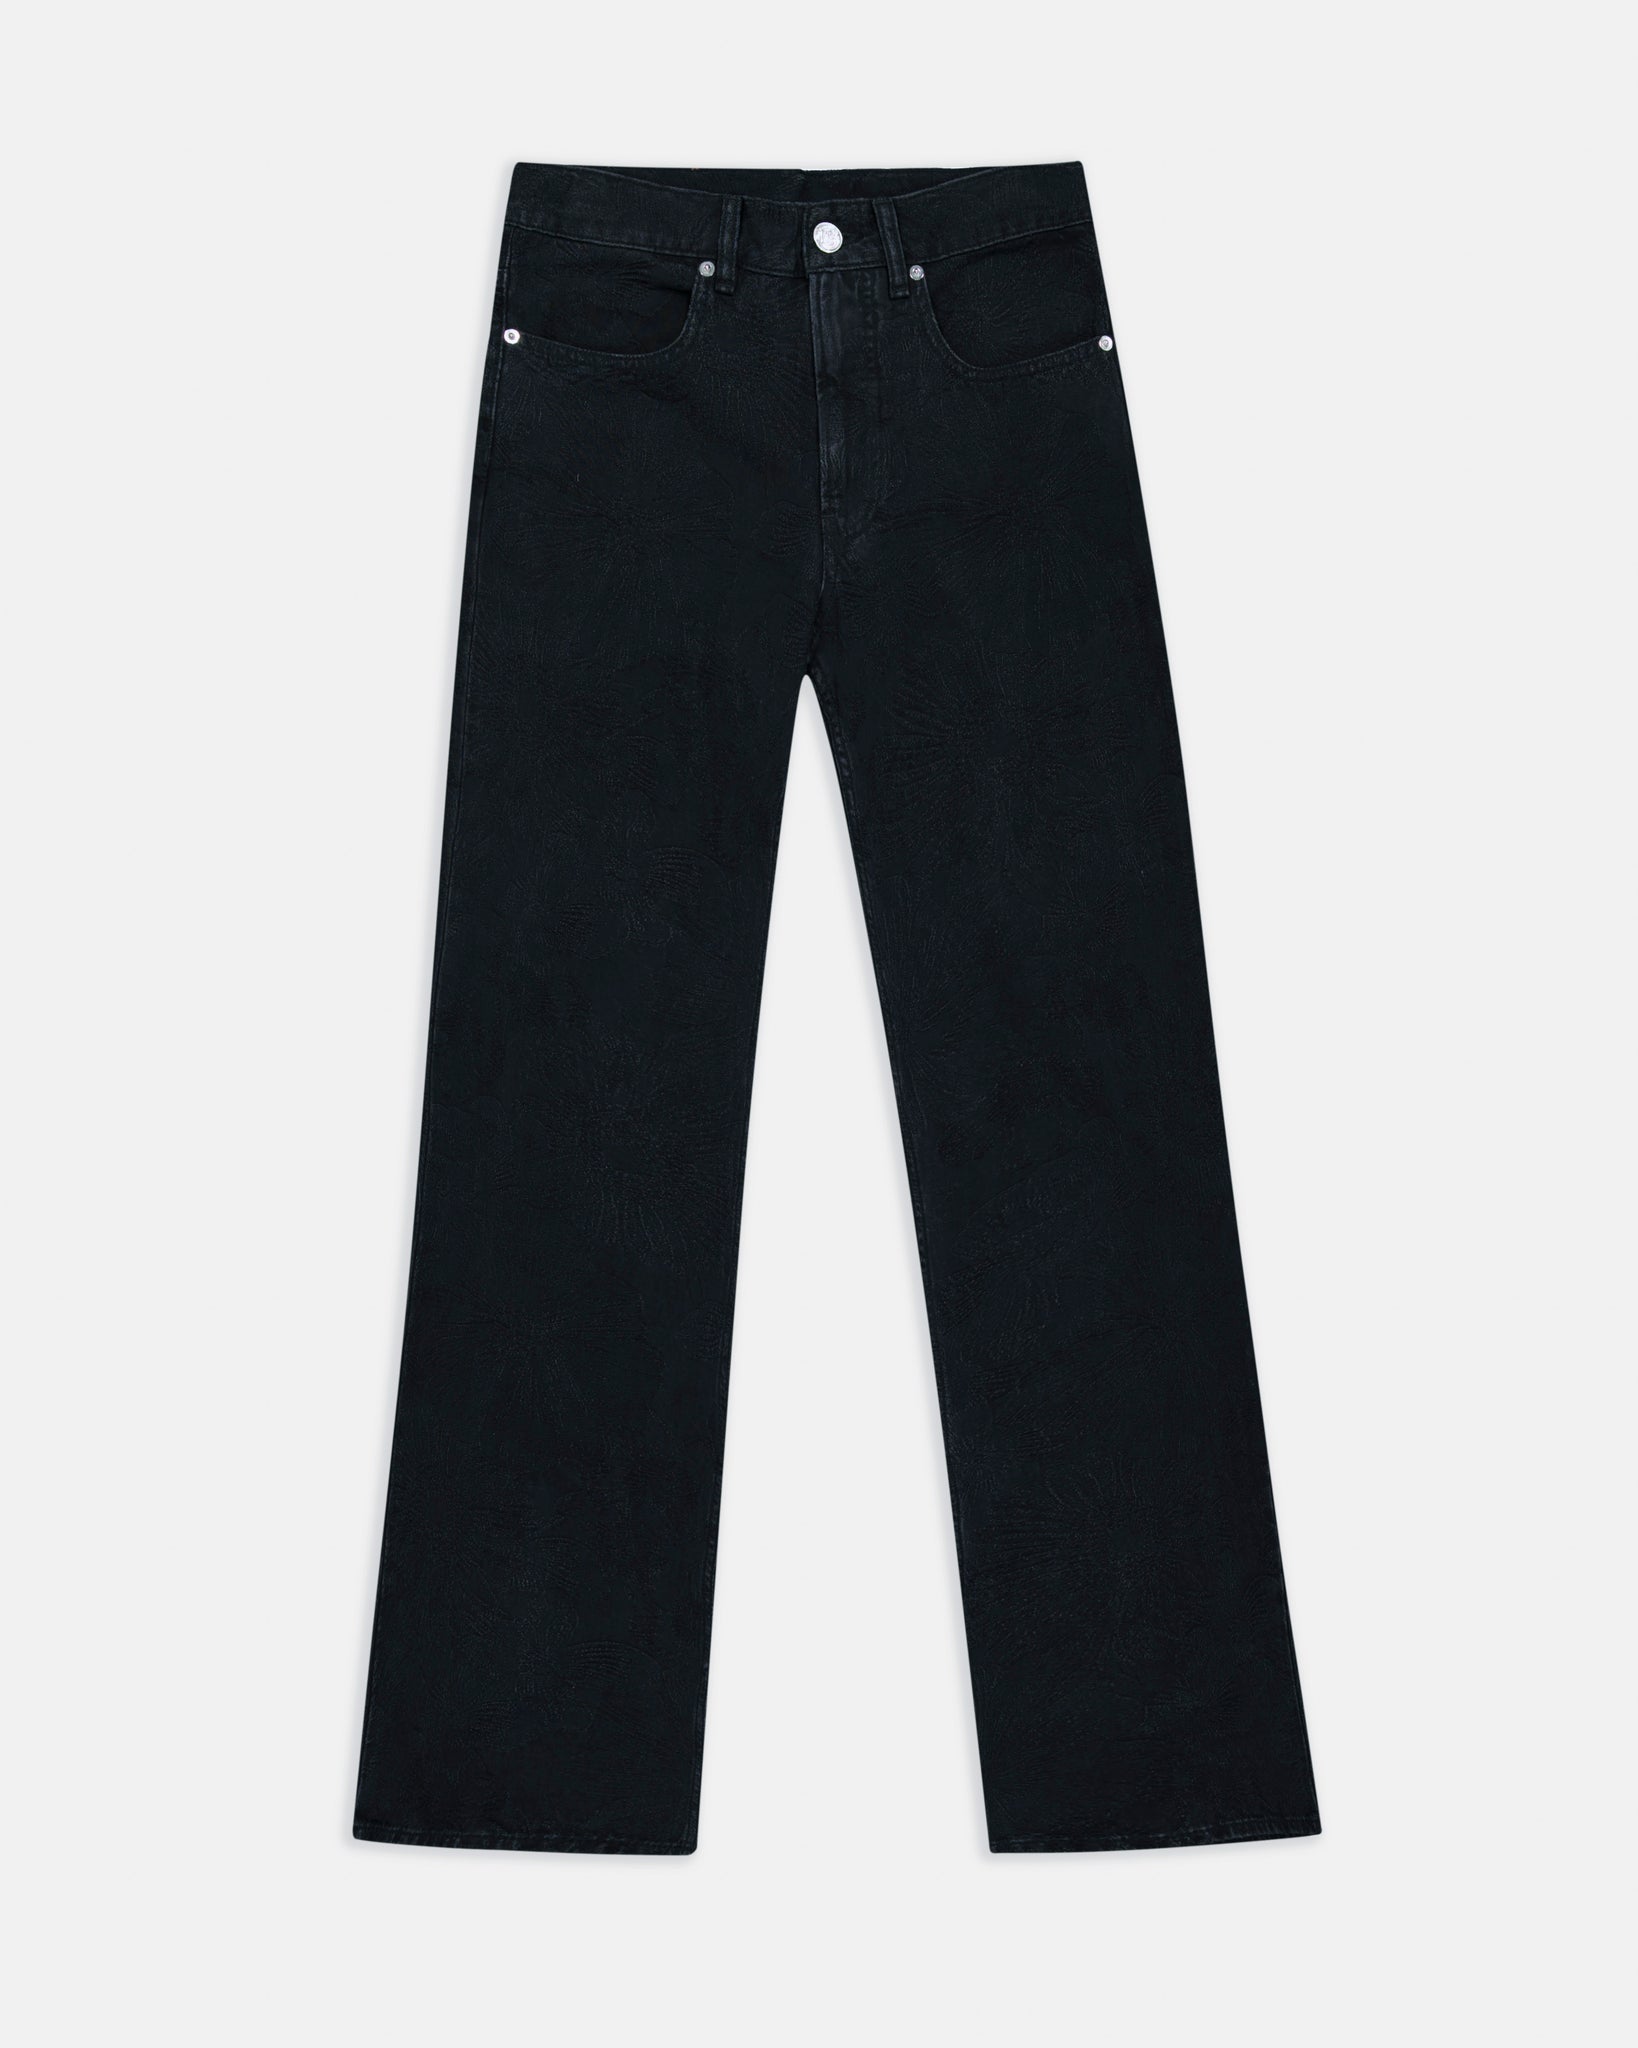 Black Jacquard Jeans